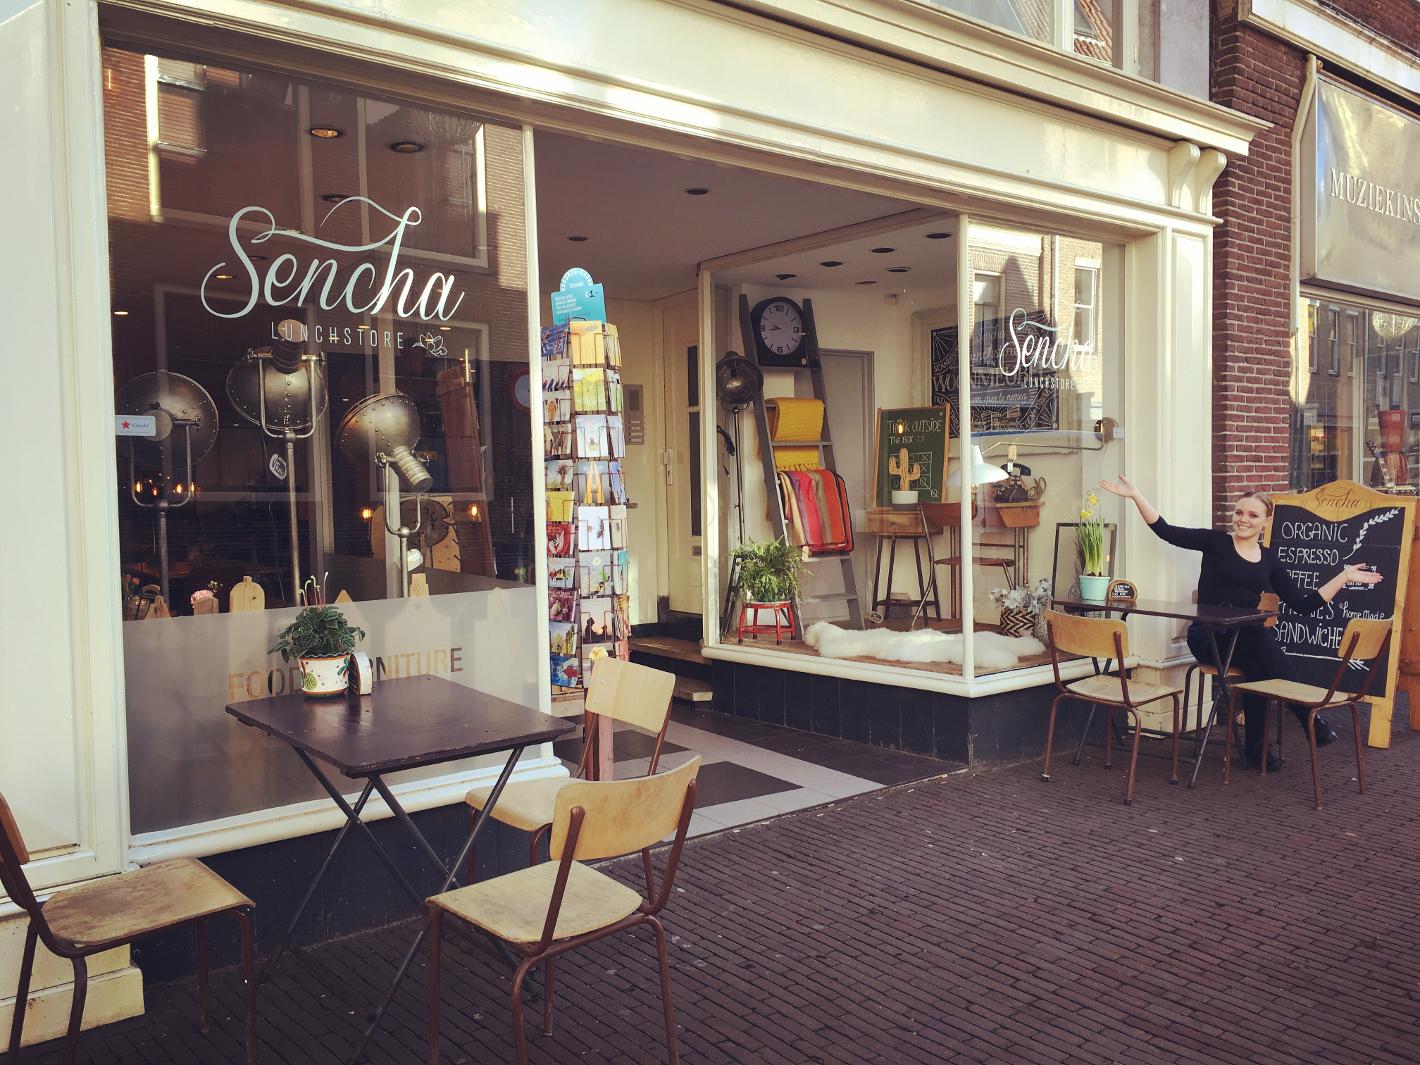 Foto Sencha Lunchstore in Alkmaar, Eten & drinken, Koffie, thee & gebak, Lunchen - #1